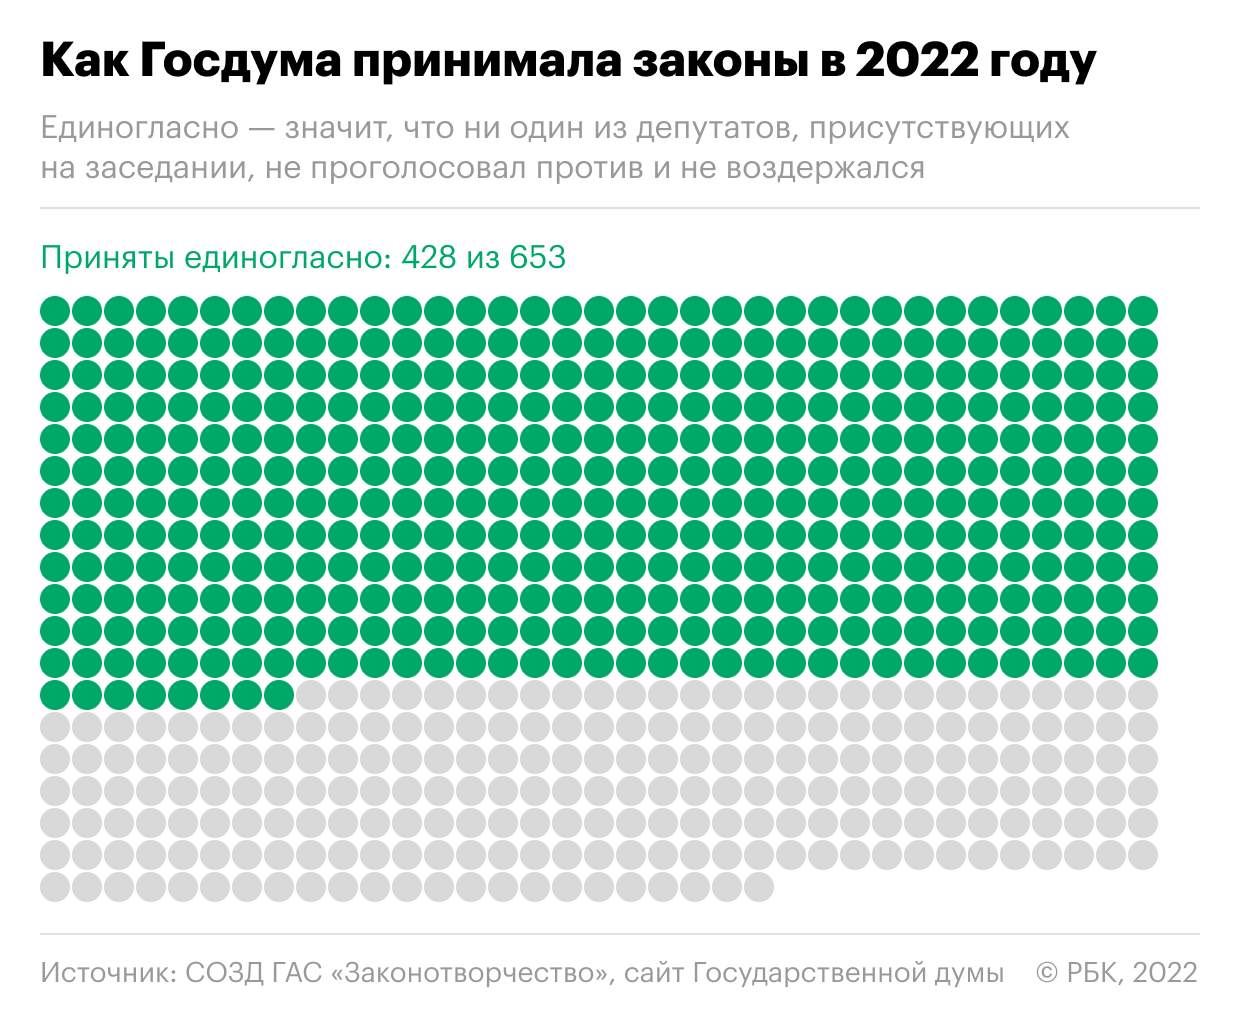 Какие законы принимала Дума в 2022 году. Инфографика